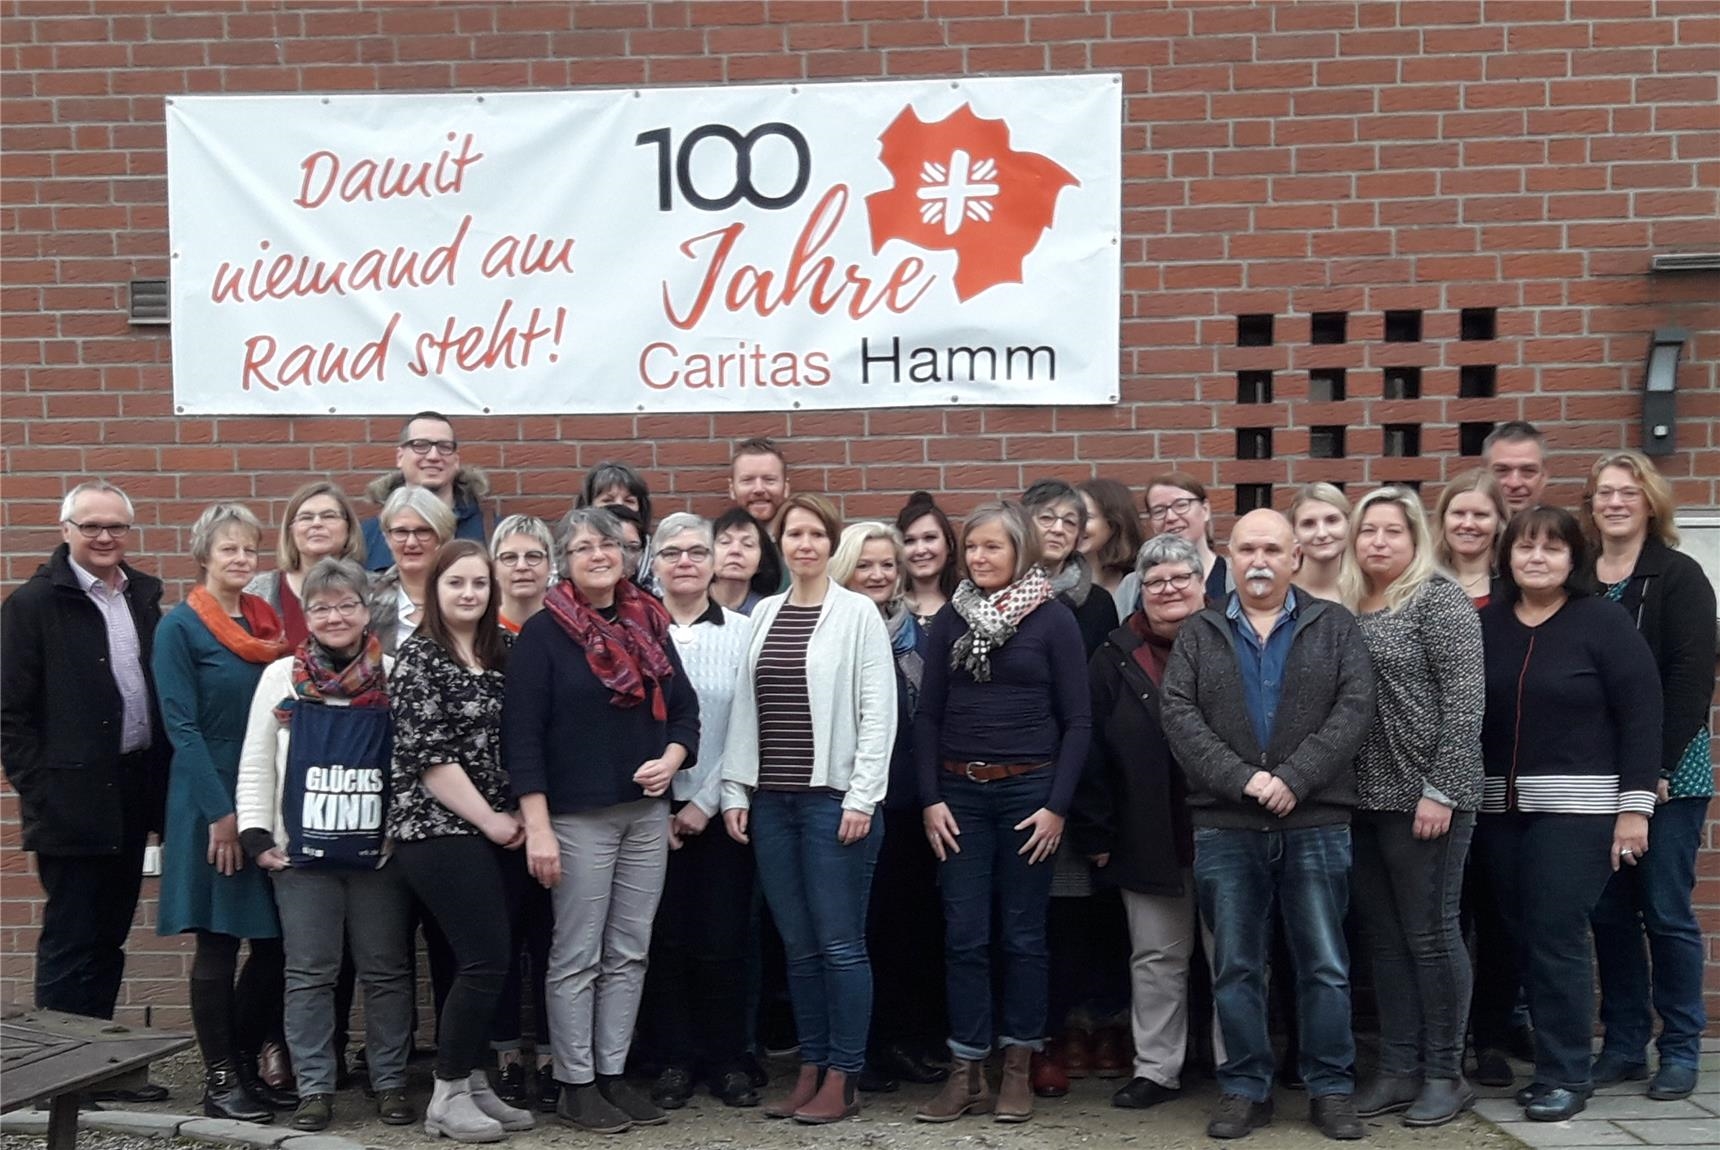 Frauen und Männer stehen als Gruppe zusammen vor einer roten Klinkerwand, an der ein Banner mit "Damit niemand am Rand steht! 100 Jahre Caritas Hamm" steht (Caritas Hamm)